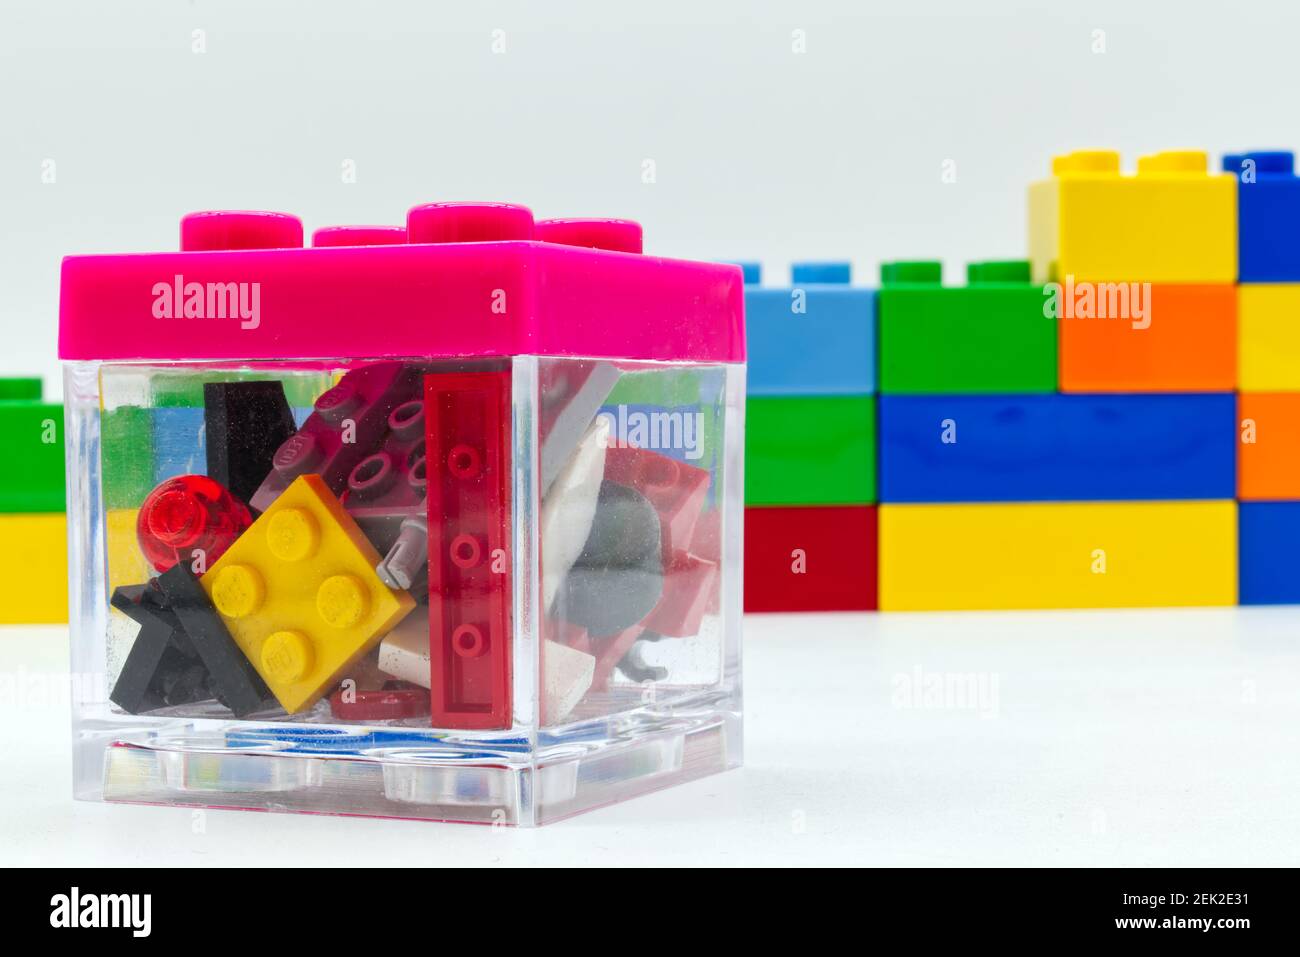 Blocs de construction Lego mixtes à l'intérieur d'une boîte Lego  transparente Photo Stock - Alamy